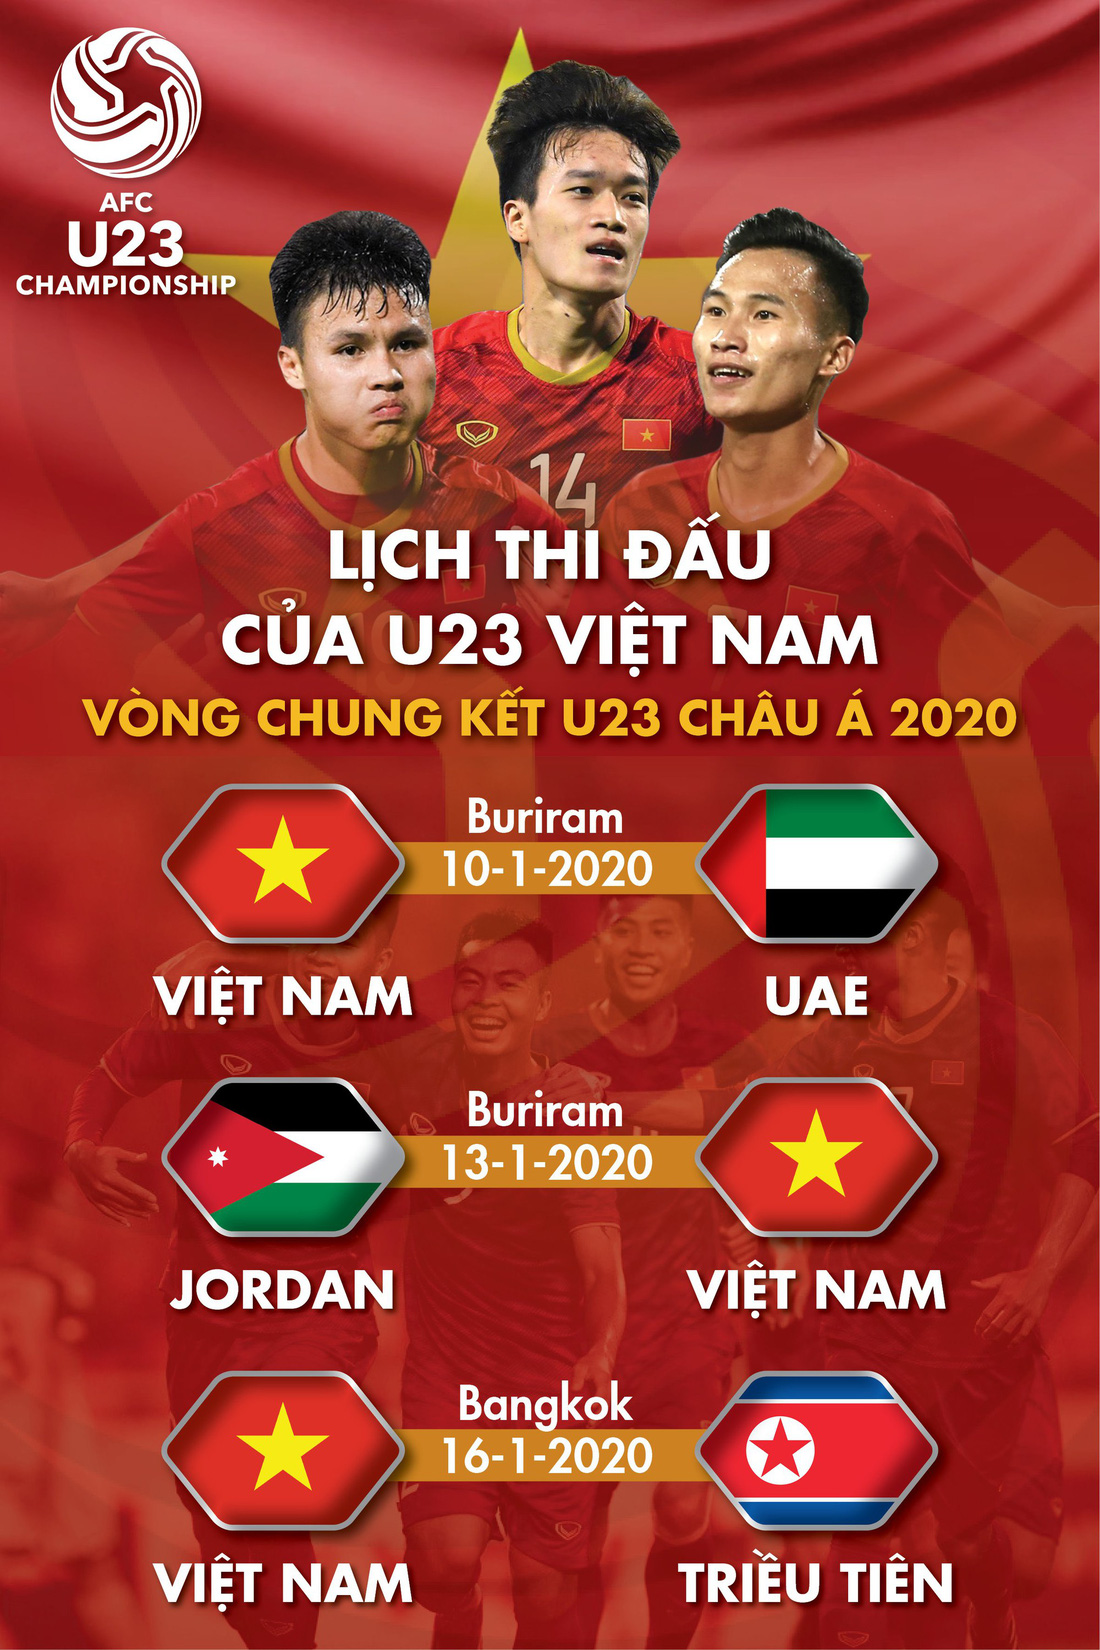 Lịch thi đấu vòng chung kết Giải U23 châu Á 2020 của U23 Việt Nam - Ảnh 1.